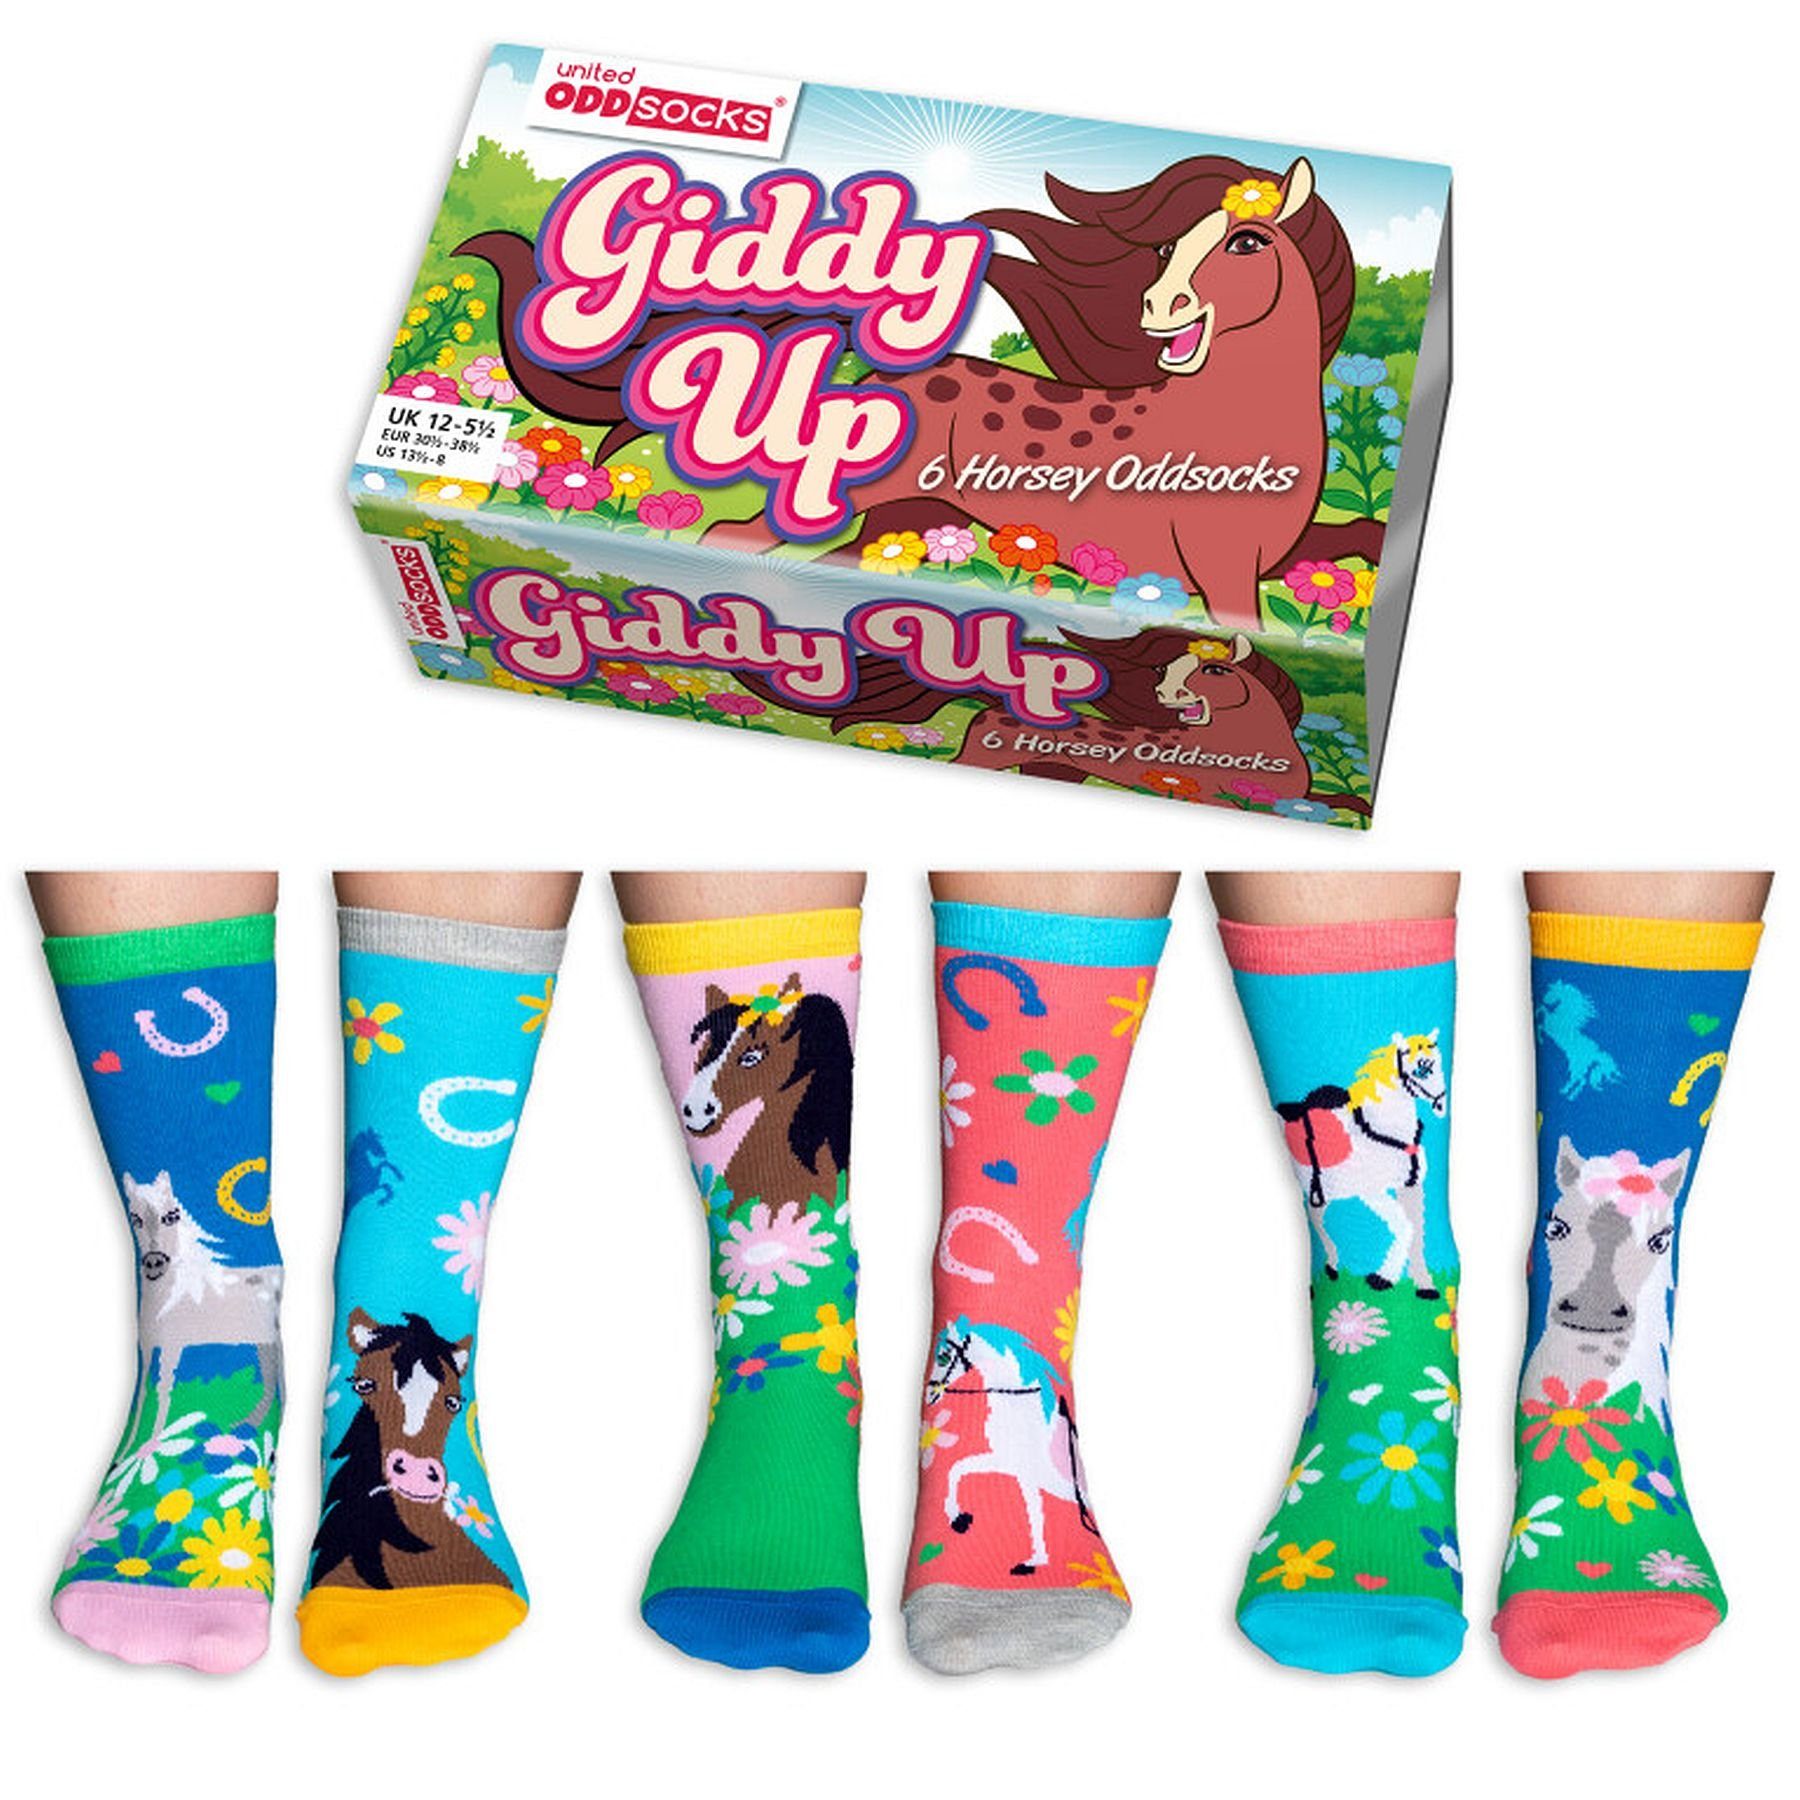 United Oddsocks Socken 3 Paar Socken Strümpfe Kinder Mädchen Gr. 30,5 -  38,5 Giddy Up Pferde, Oddsocks - Giddy up - Pferdemotiv - Socken im 6er Set  - Größe: 30,5 - 38,5